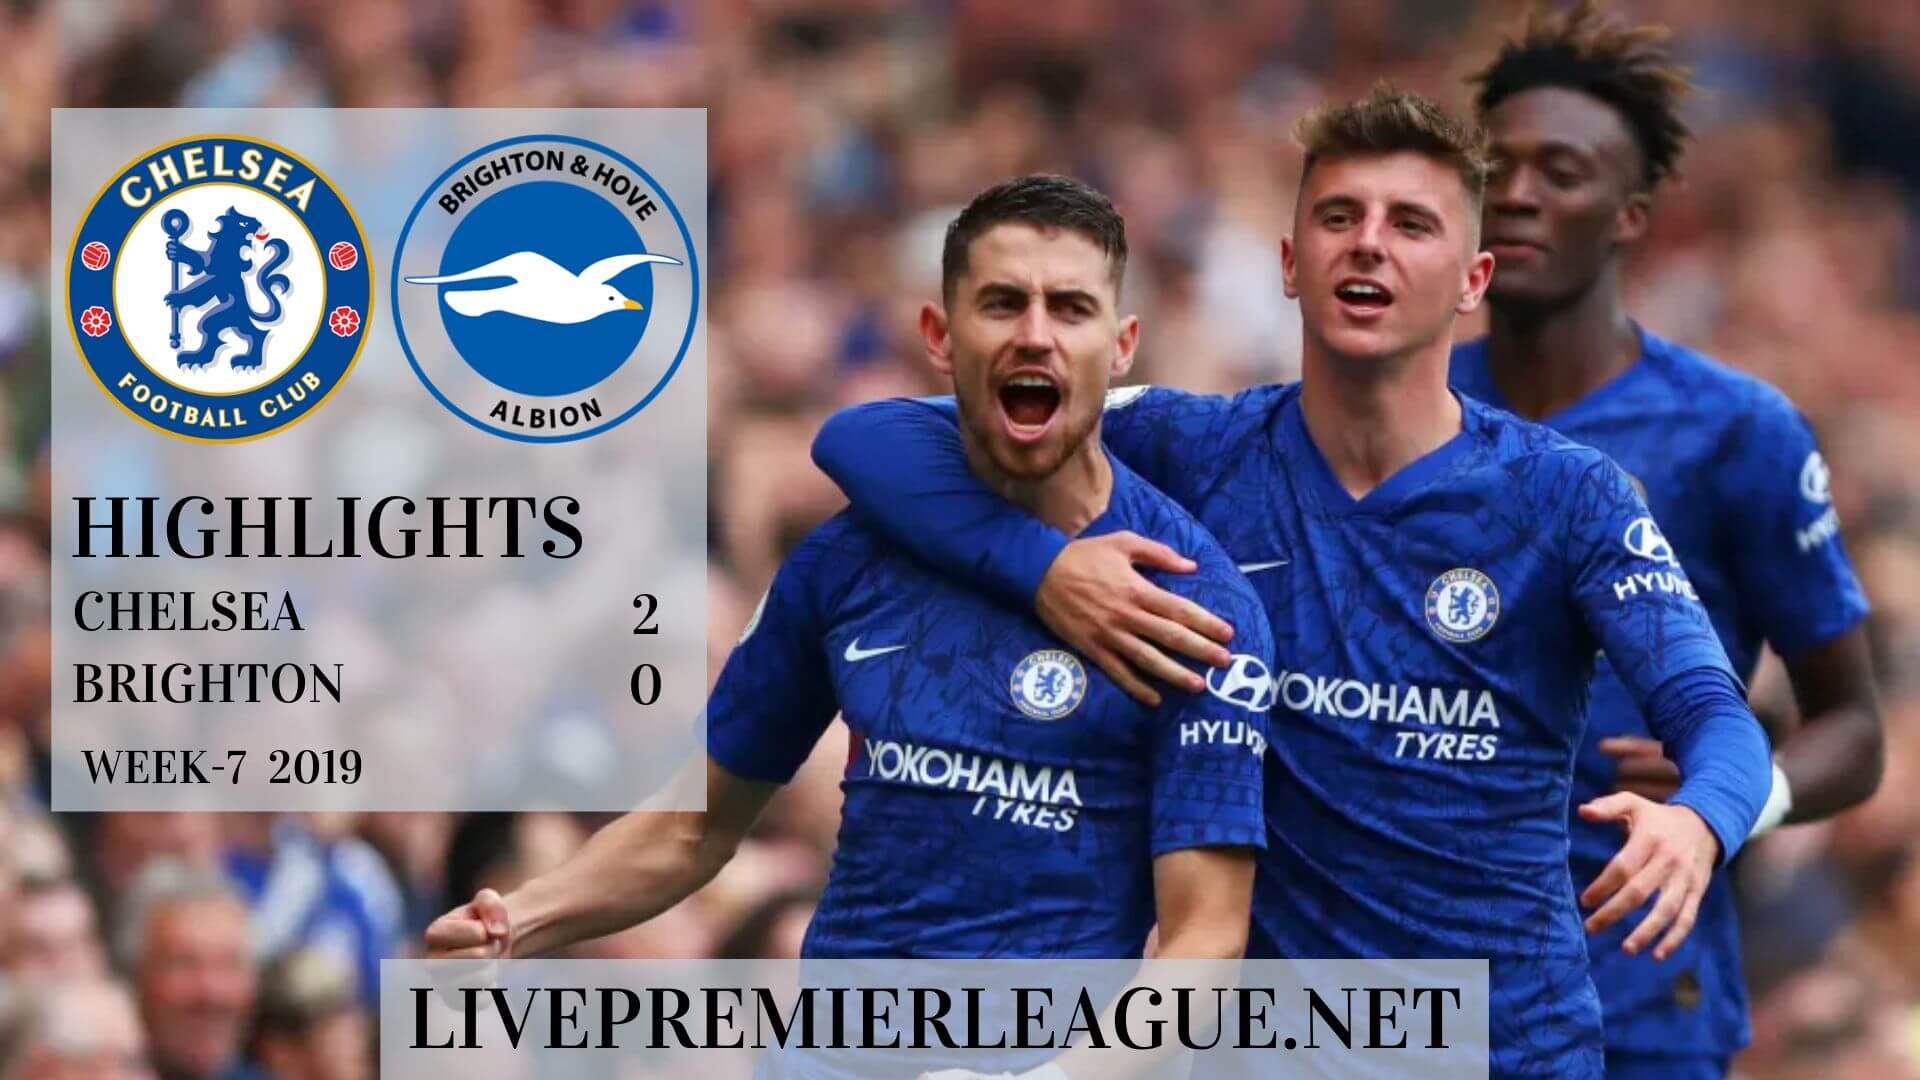 Chelsea vs Brighton Highlights 2019 Week 7